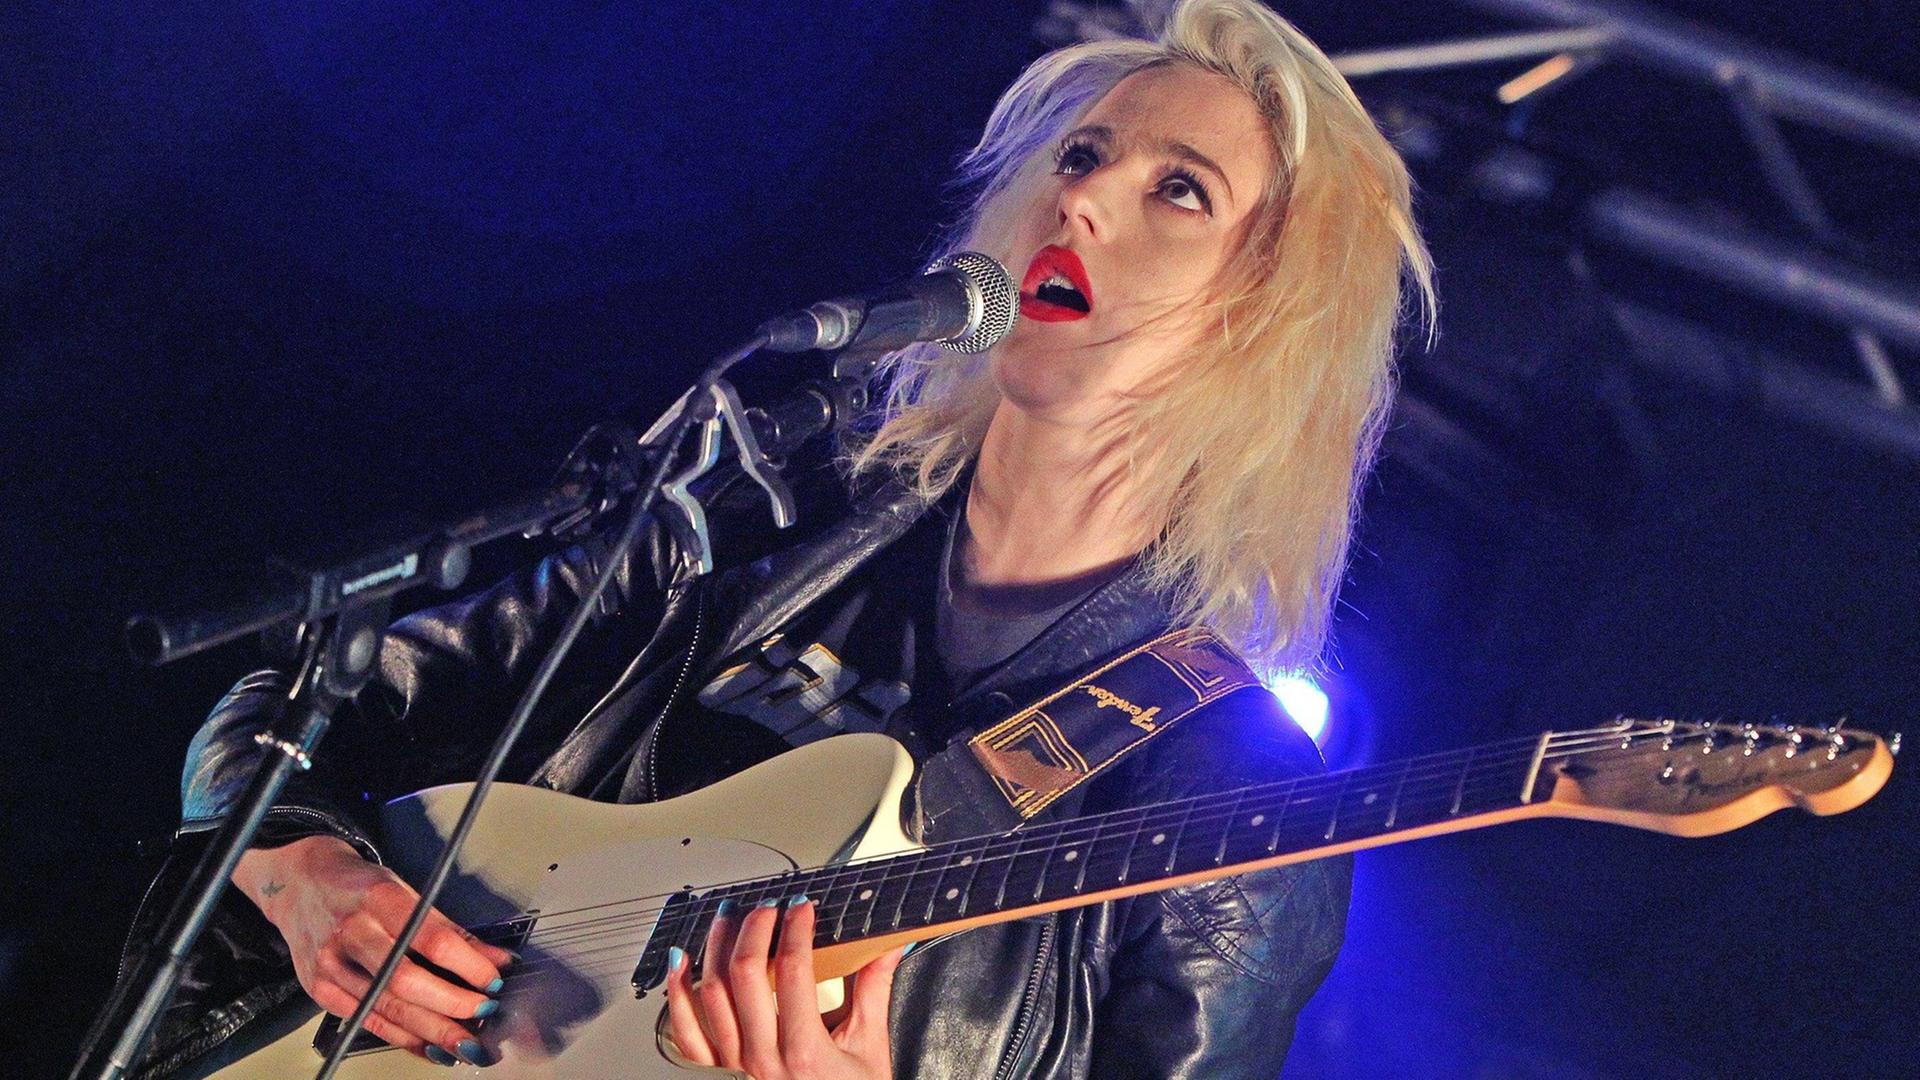 Du Blonde 2012 noch als Beth Jeans Houghton auf dem Applecart Festival in London. Blonde Sängerin, rote Lippen, schwarze Lederjacke, schwarz-weiße Hose, eine E-Gitarre spielend und singend auf einer Bühne